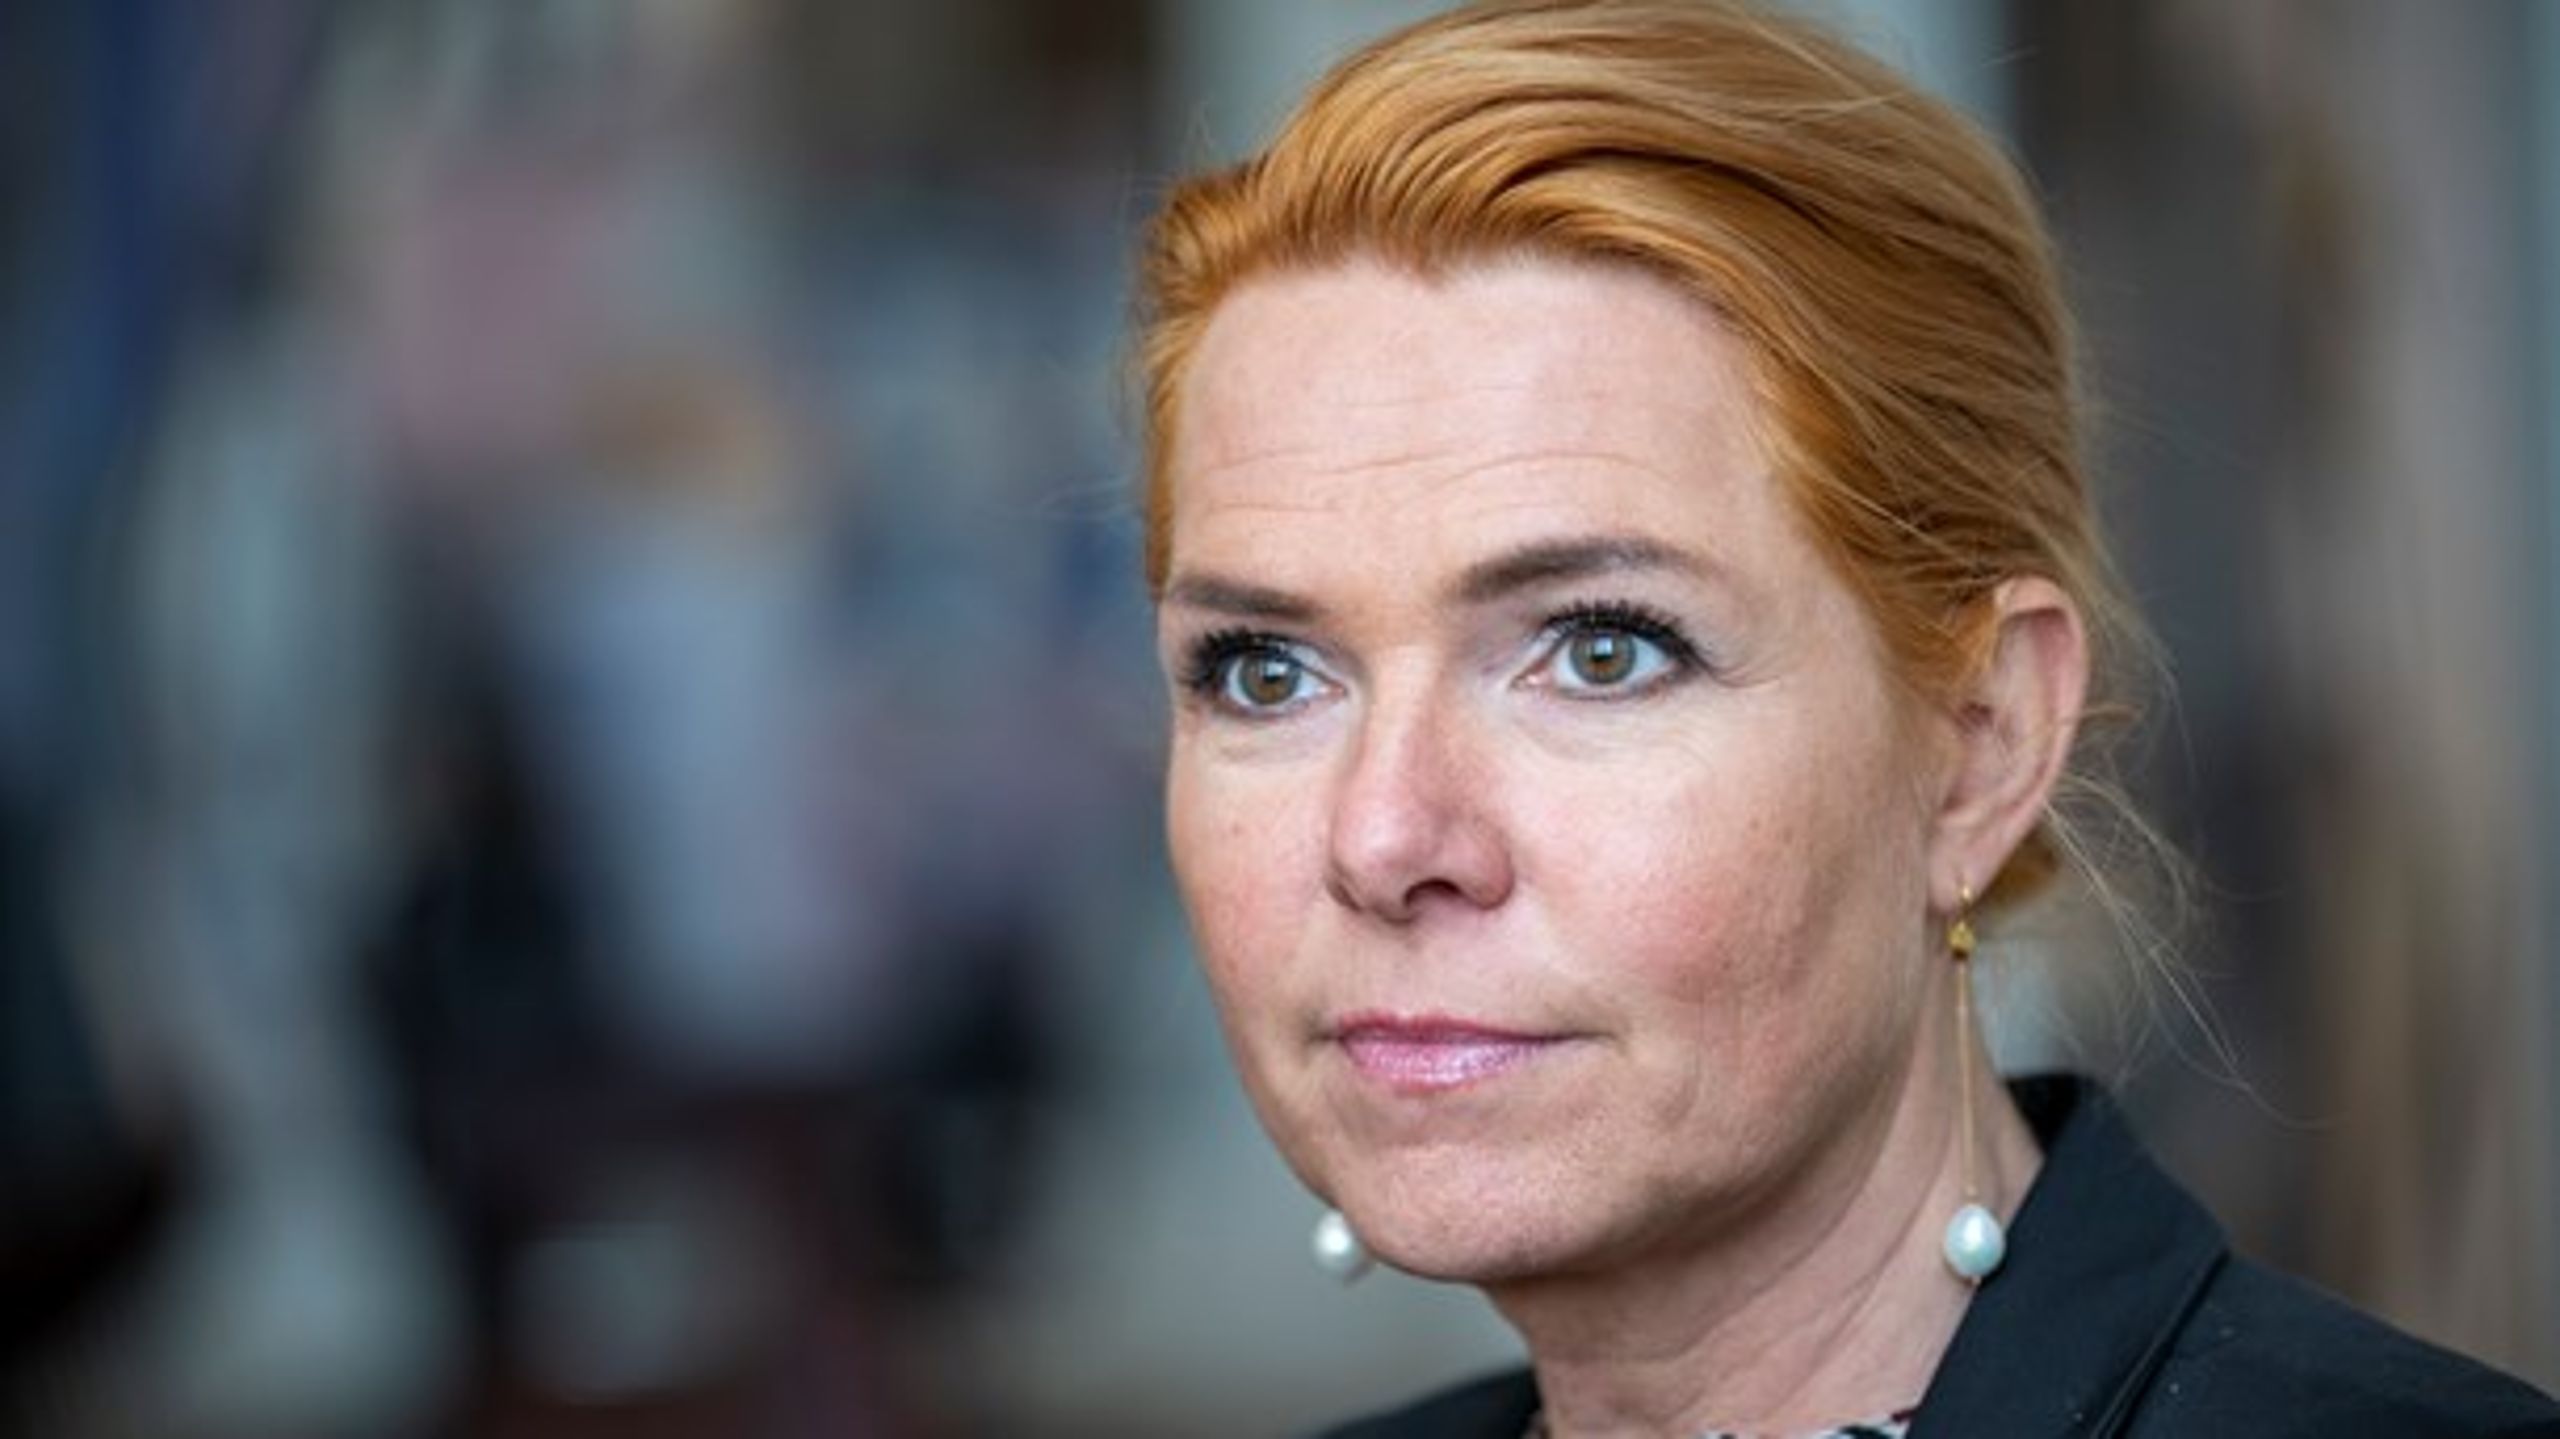 Daværende integrationsminister&nbsp;Inger Støjberg (V) bestilte i 2017 et forskningsprojekt om negativ social for at "gøre op med berøringsangsten".